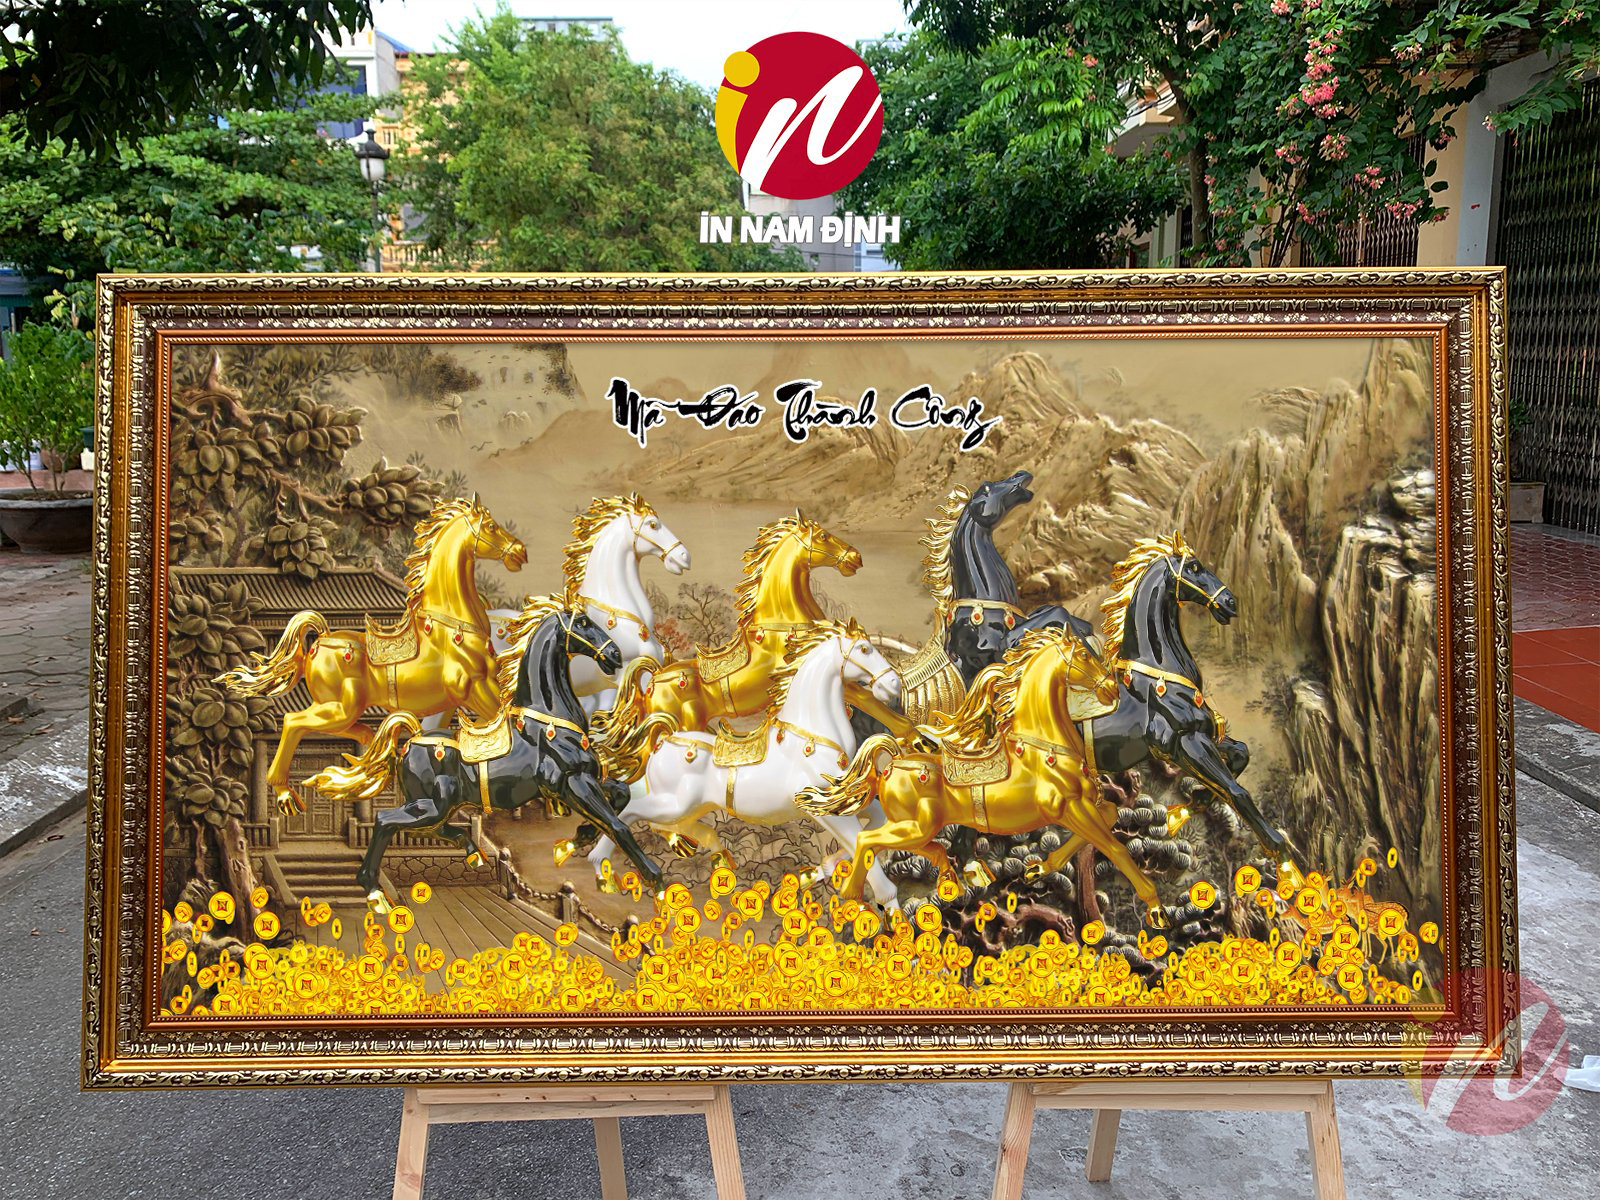 Đóng khung tranh đính đá với nhiều đặc điểm nổi bật tại Nam Định